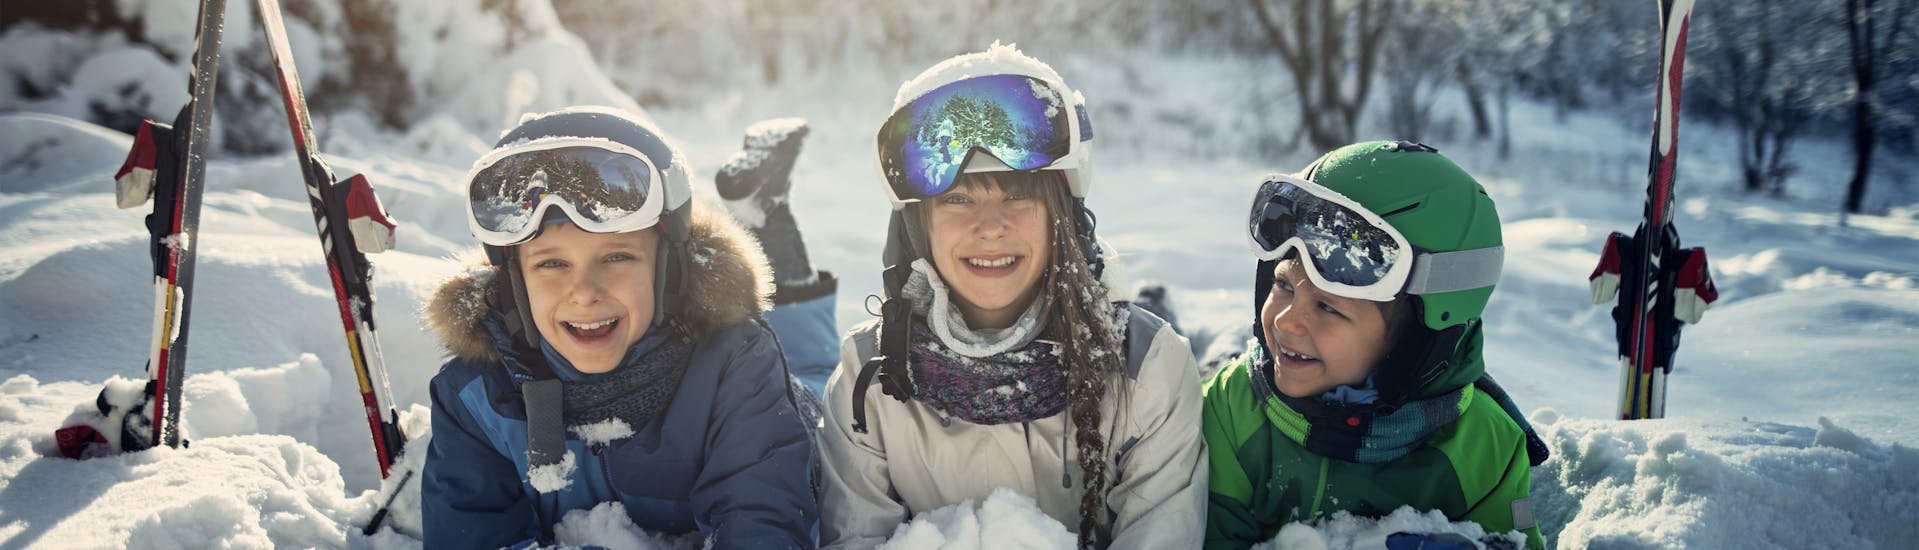 Lezioni di sci per bambini a partire da 5 anni per tutti i livelli con Skischule Jennerkids - TreffAktiv.